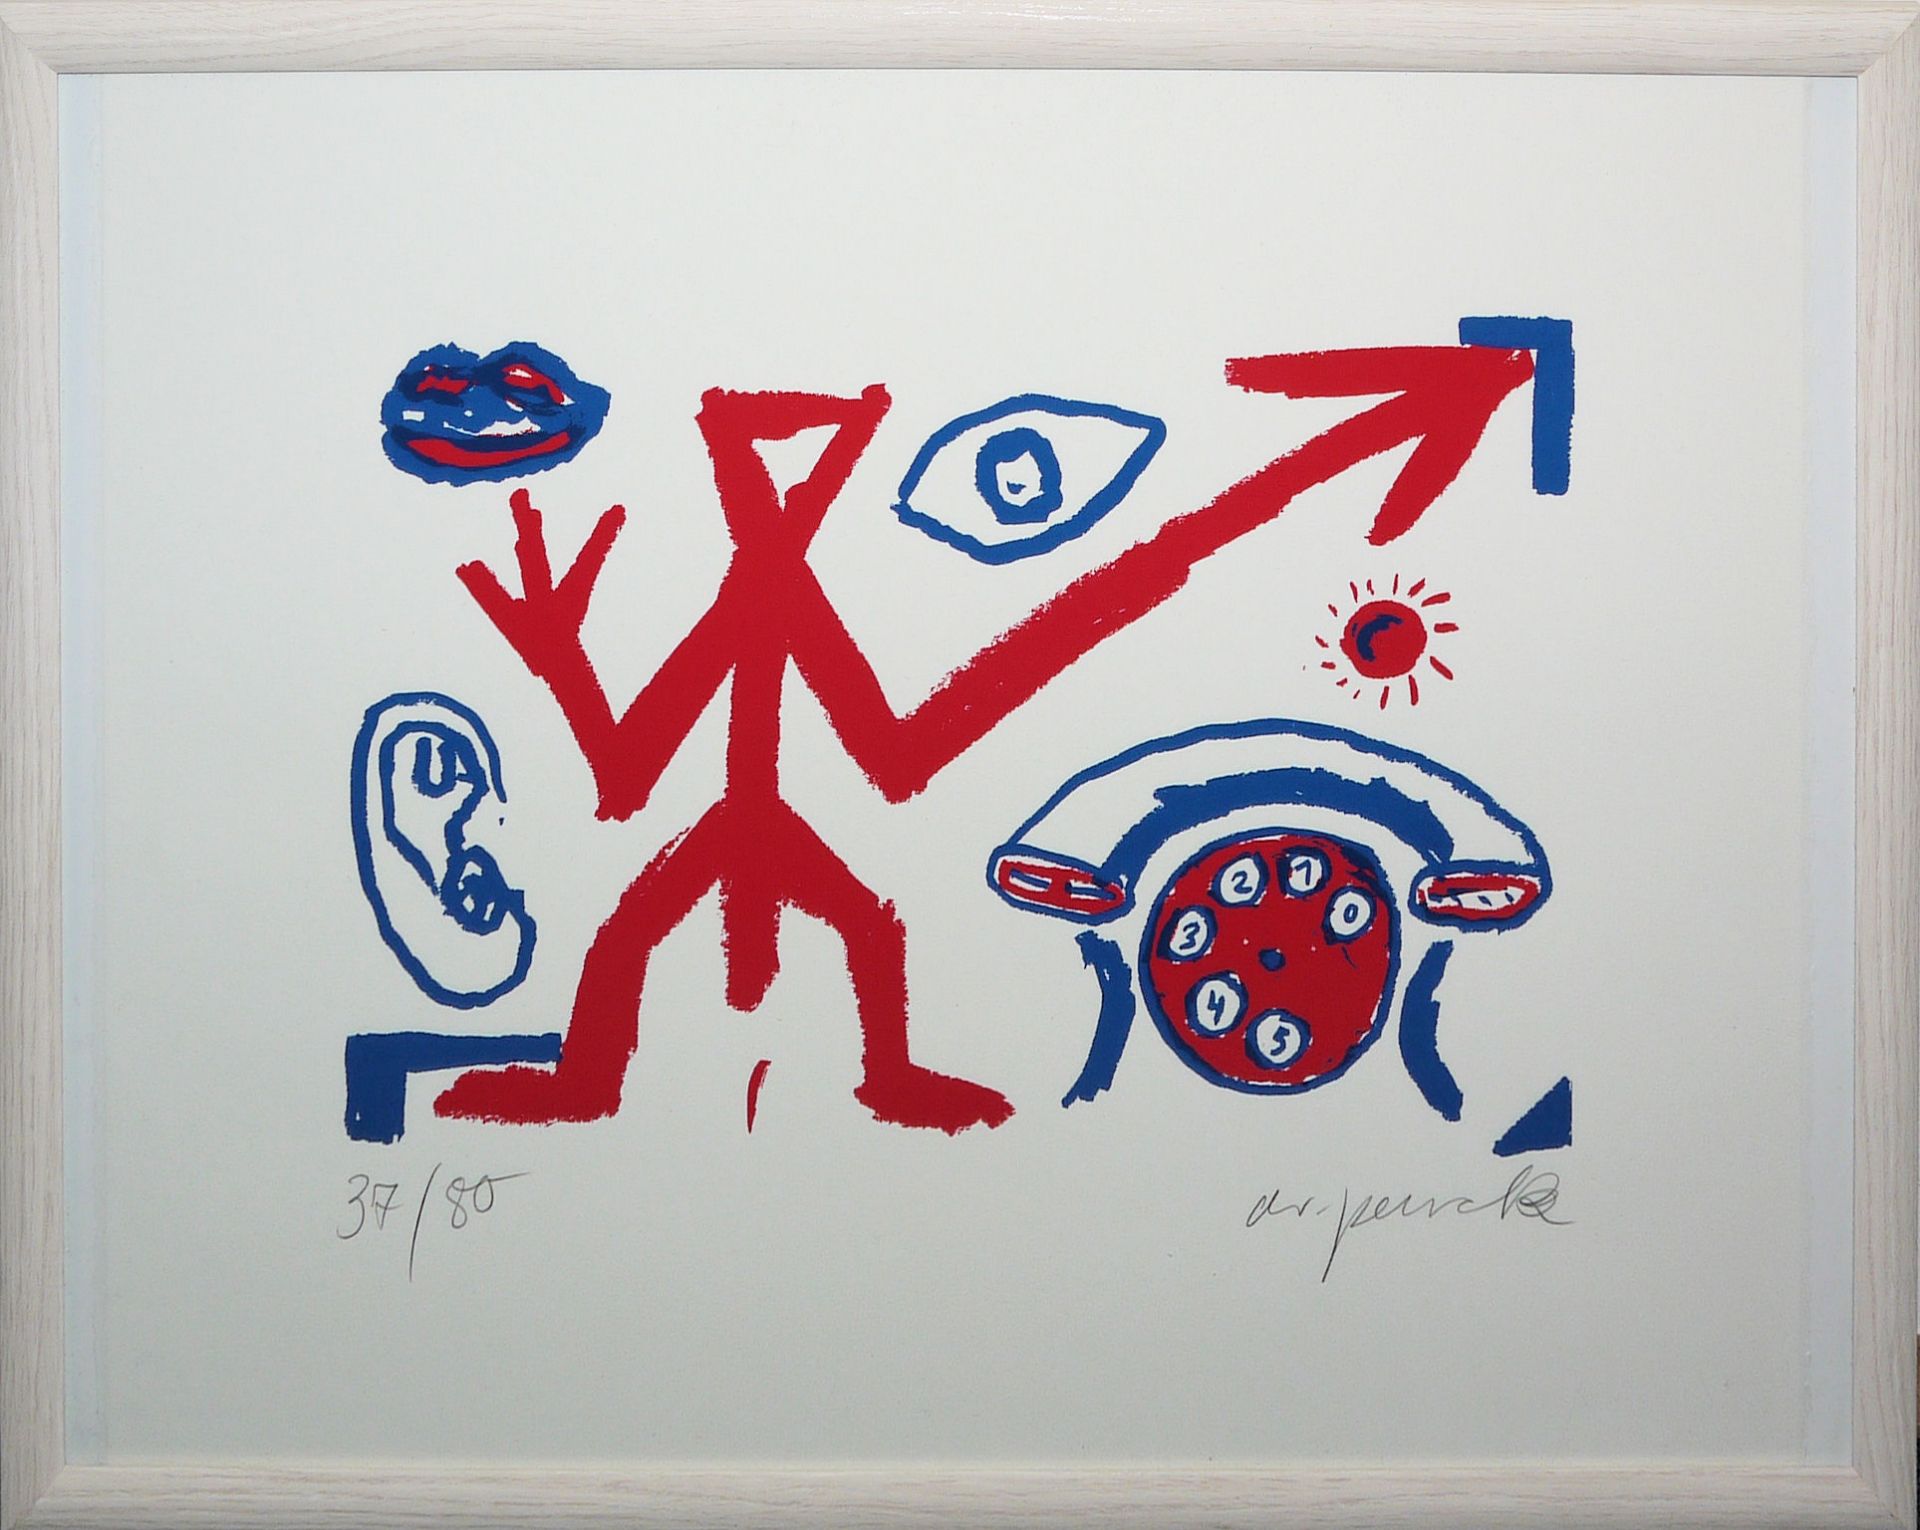 A.R. Penck, "Rufnot", signierte Farbserigraphie von 1992